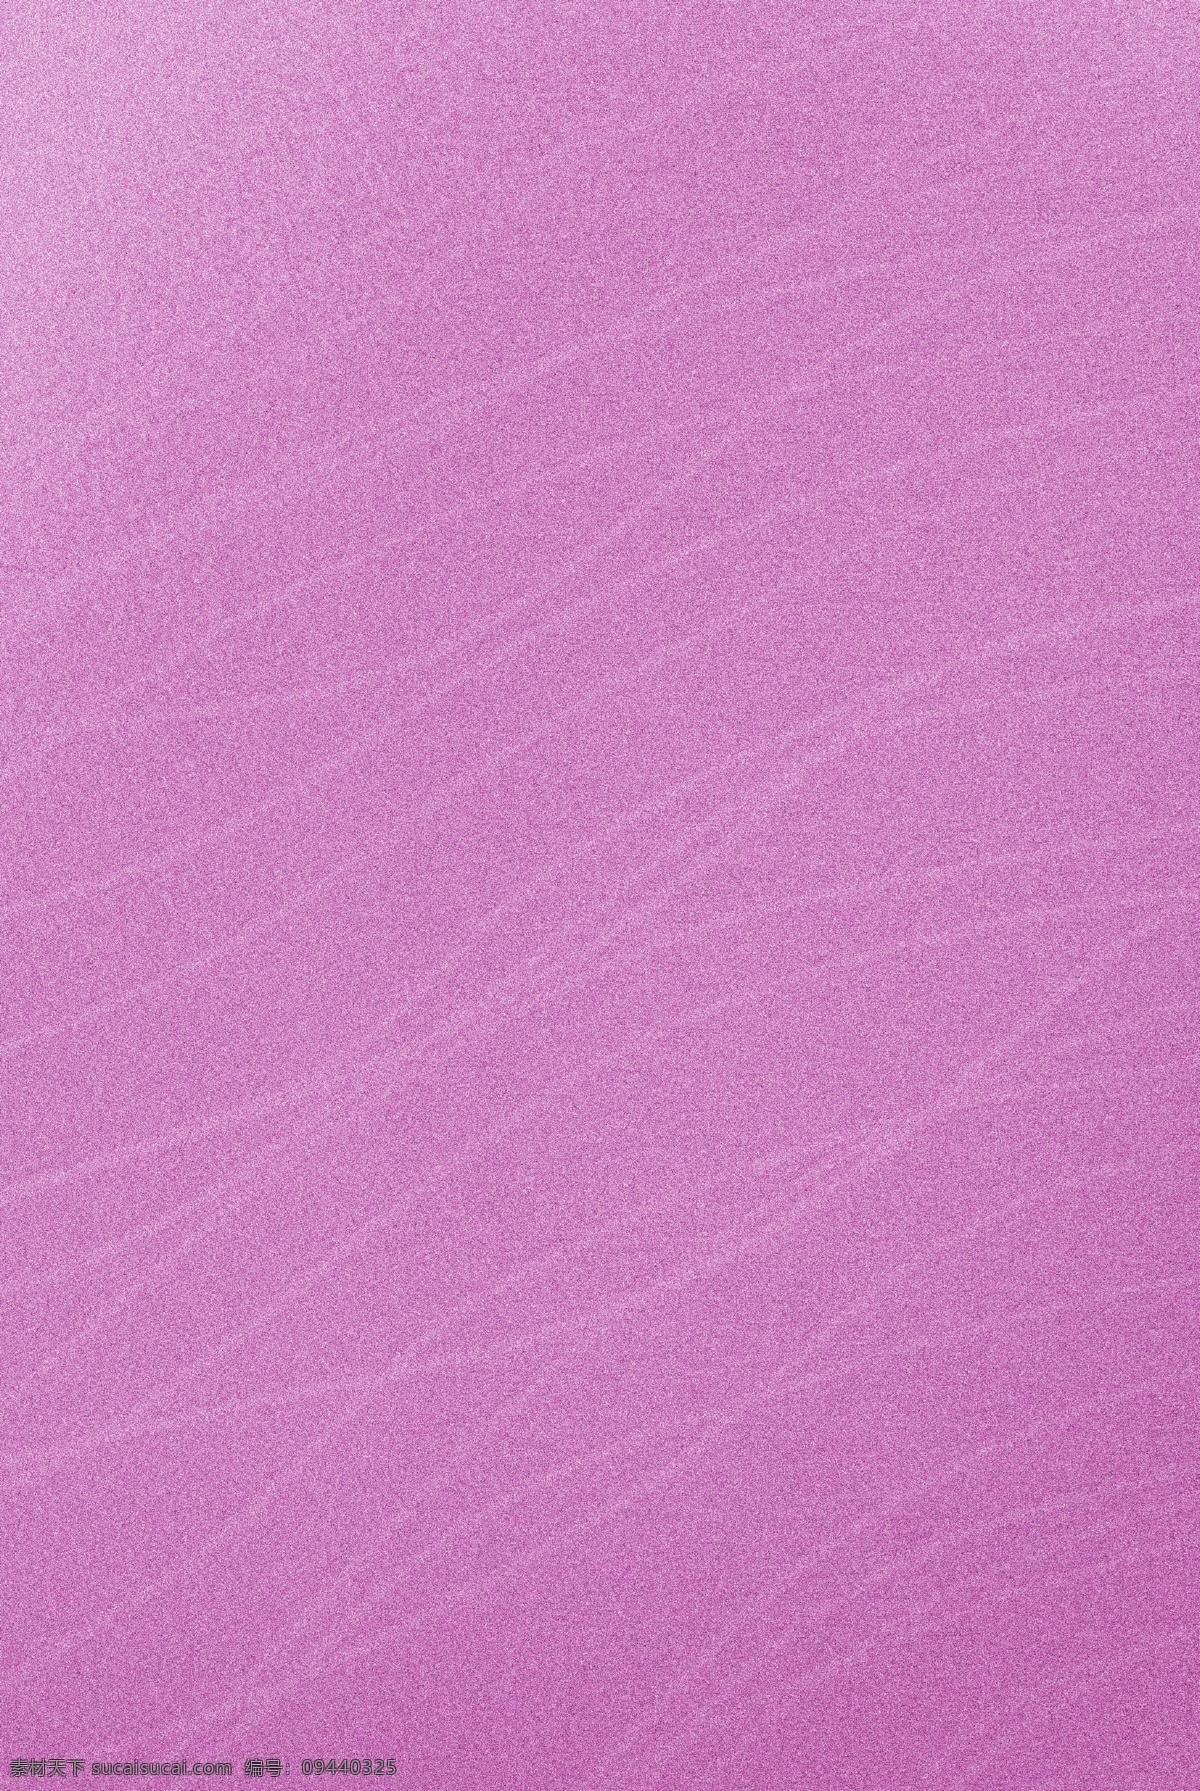 紫色 渐变 磨砂 曲线 纹理 背景 波纹 纯色背景 纯底纹 流动 线条 抽象 花纹 质感 绚丽 时尚